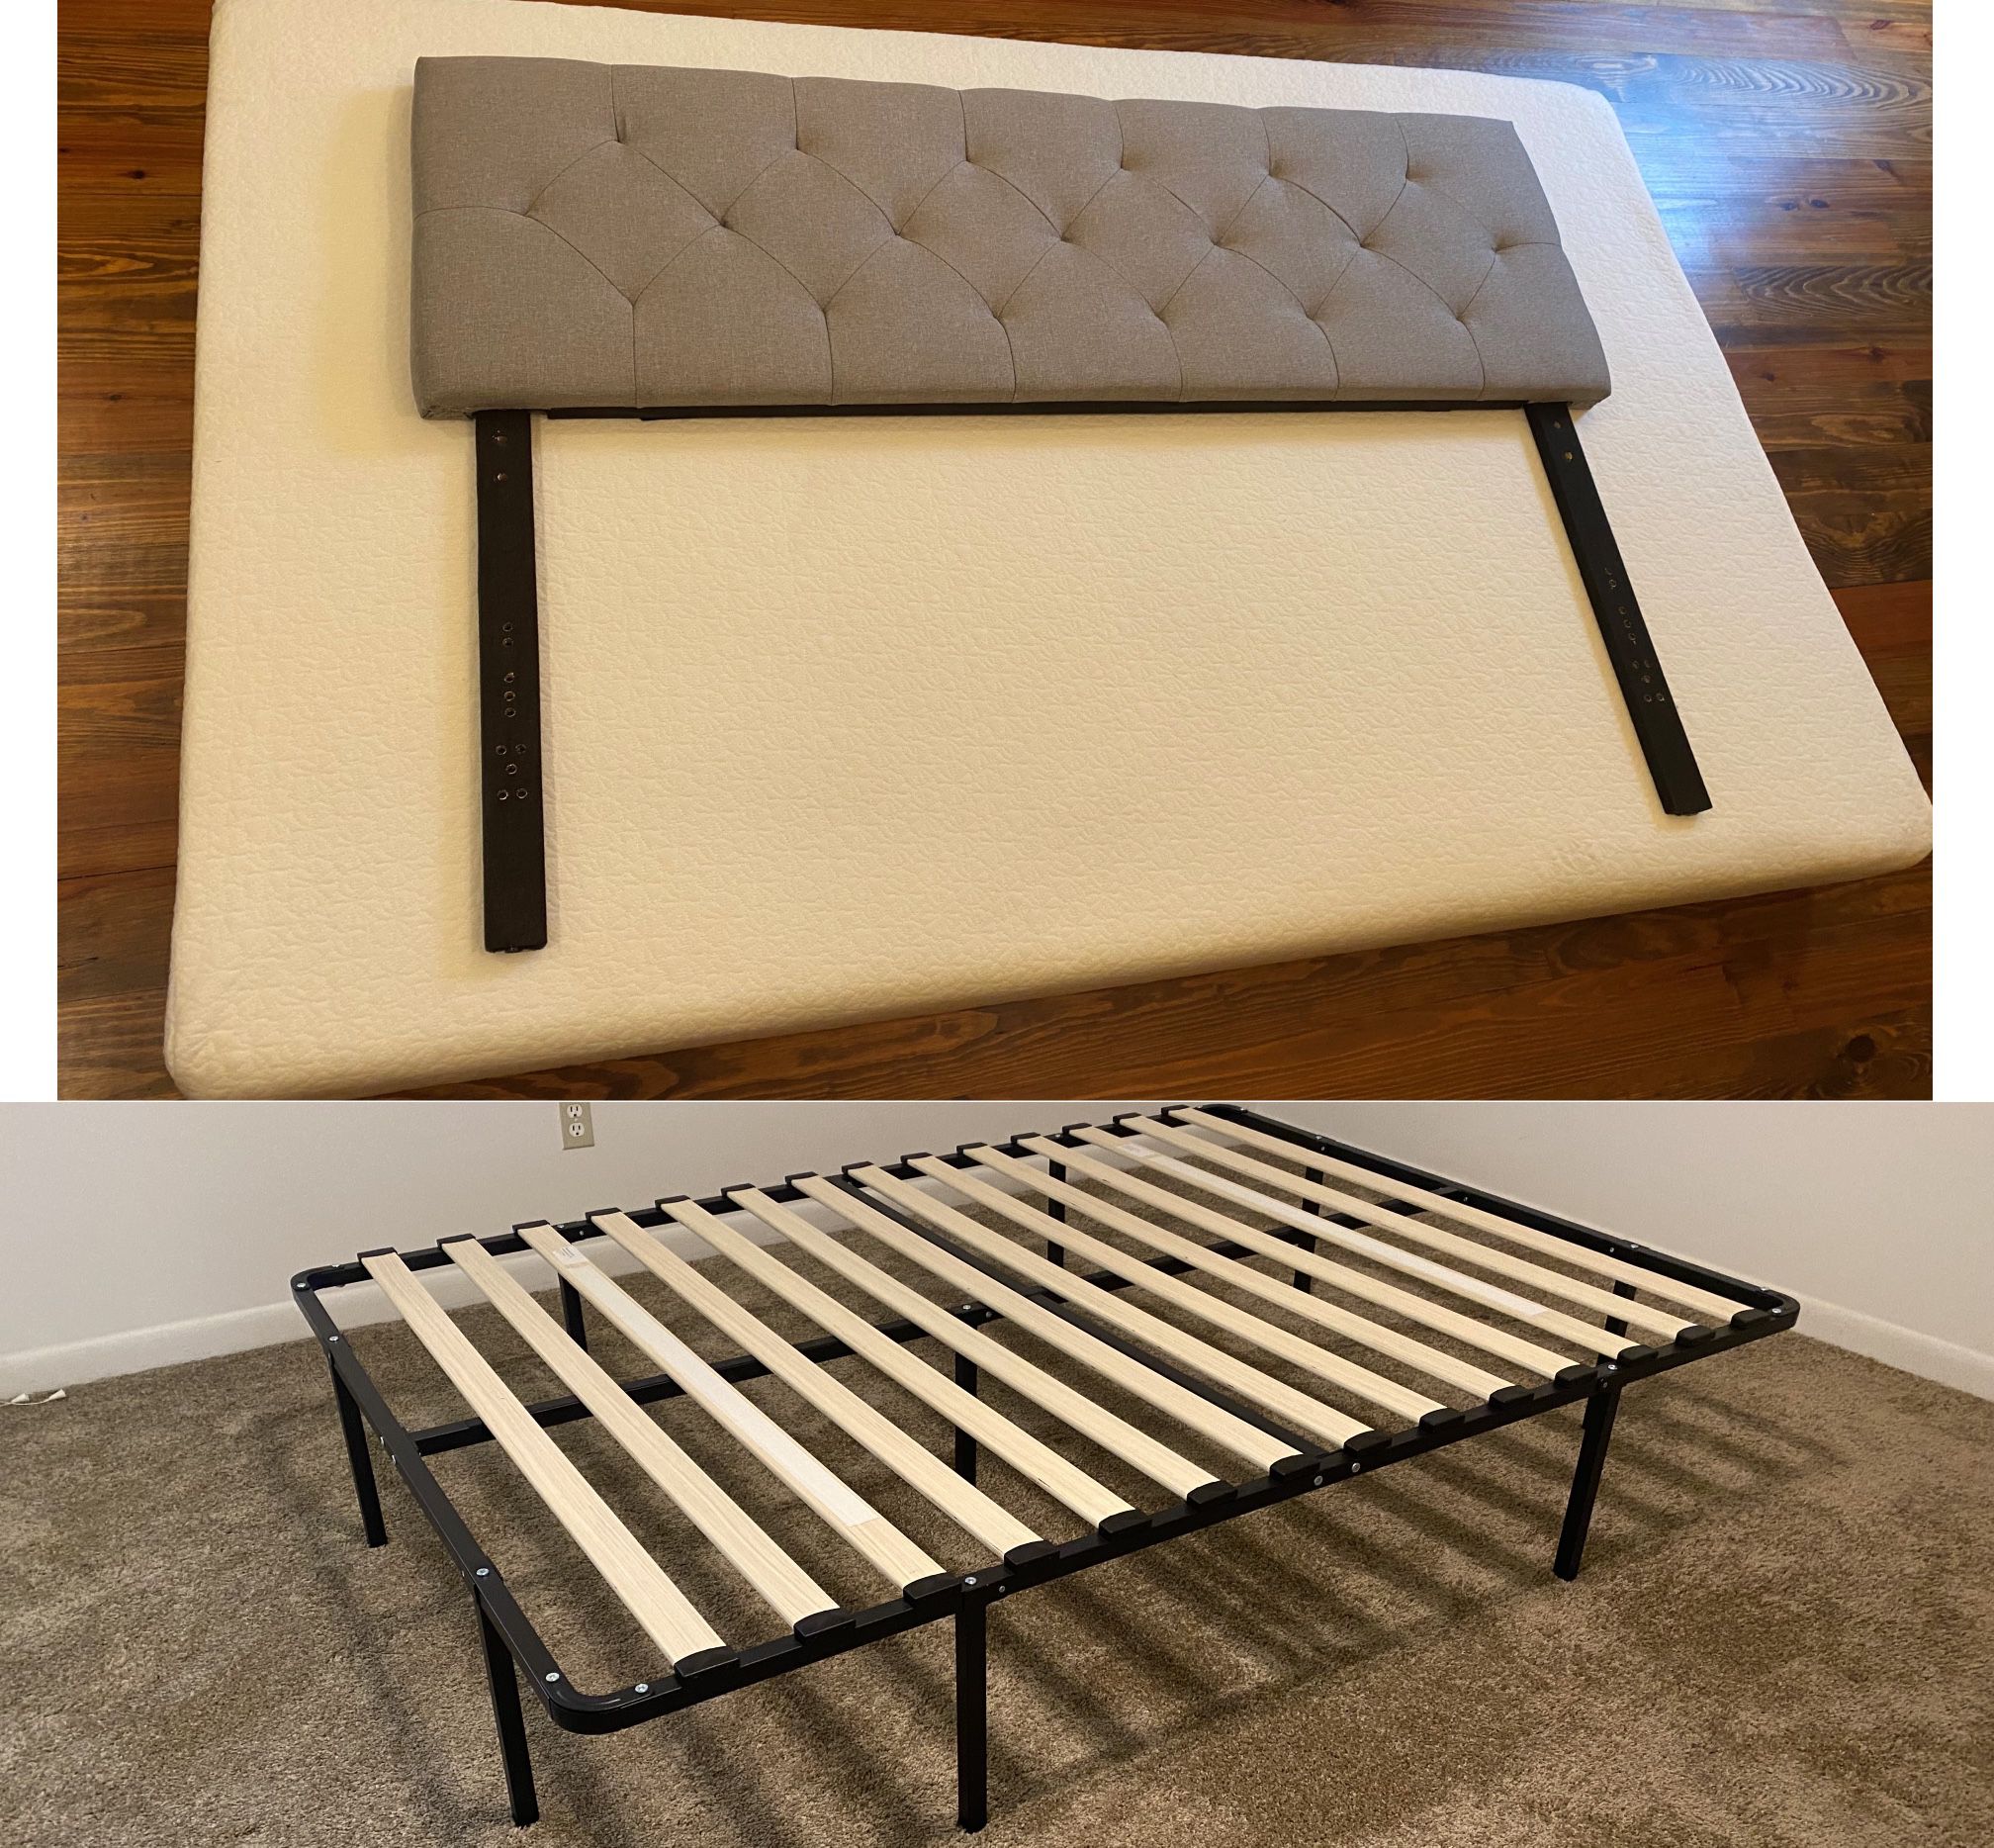 Full Bed, Frame, & Upholstered Headboard Package - Memory Foam Bed - Like New